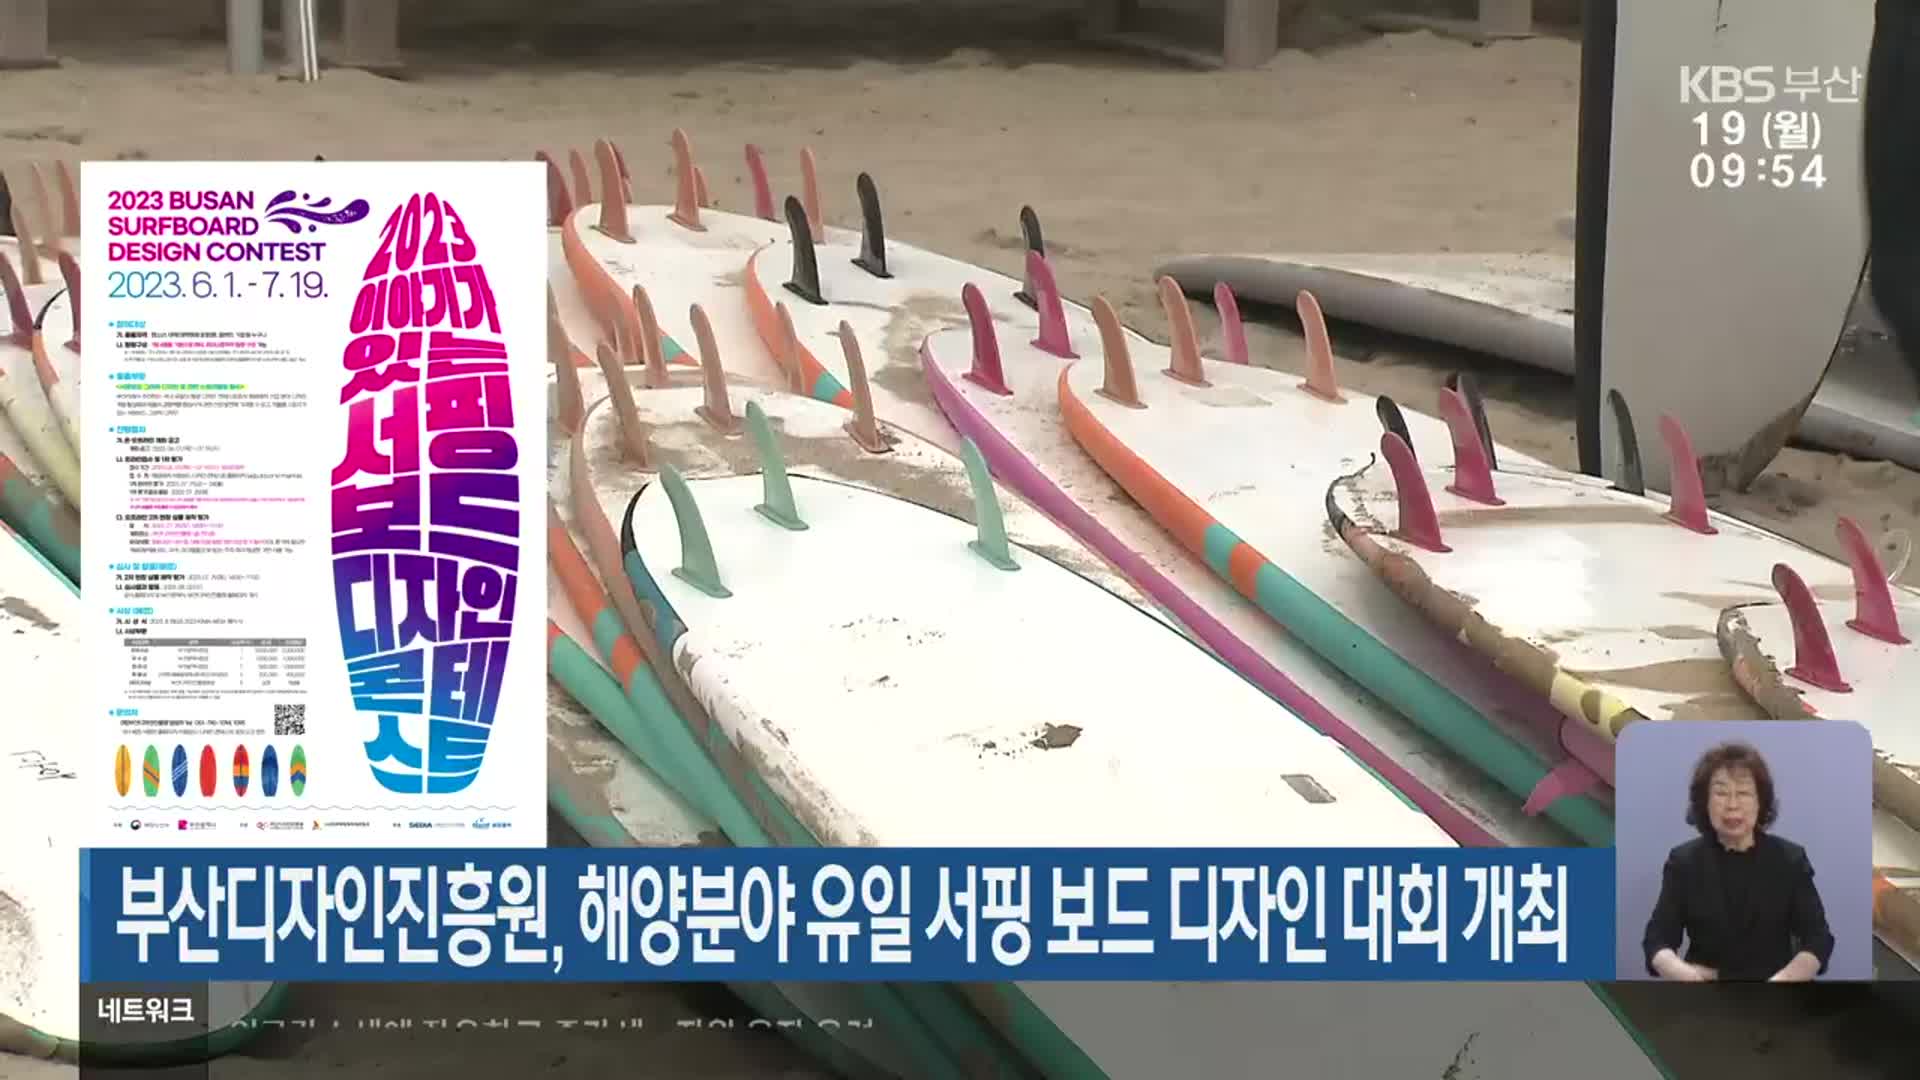 부산디자인진흥원, 해양분야 유일 서핑 보드 디자인 대회 개최